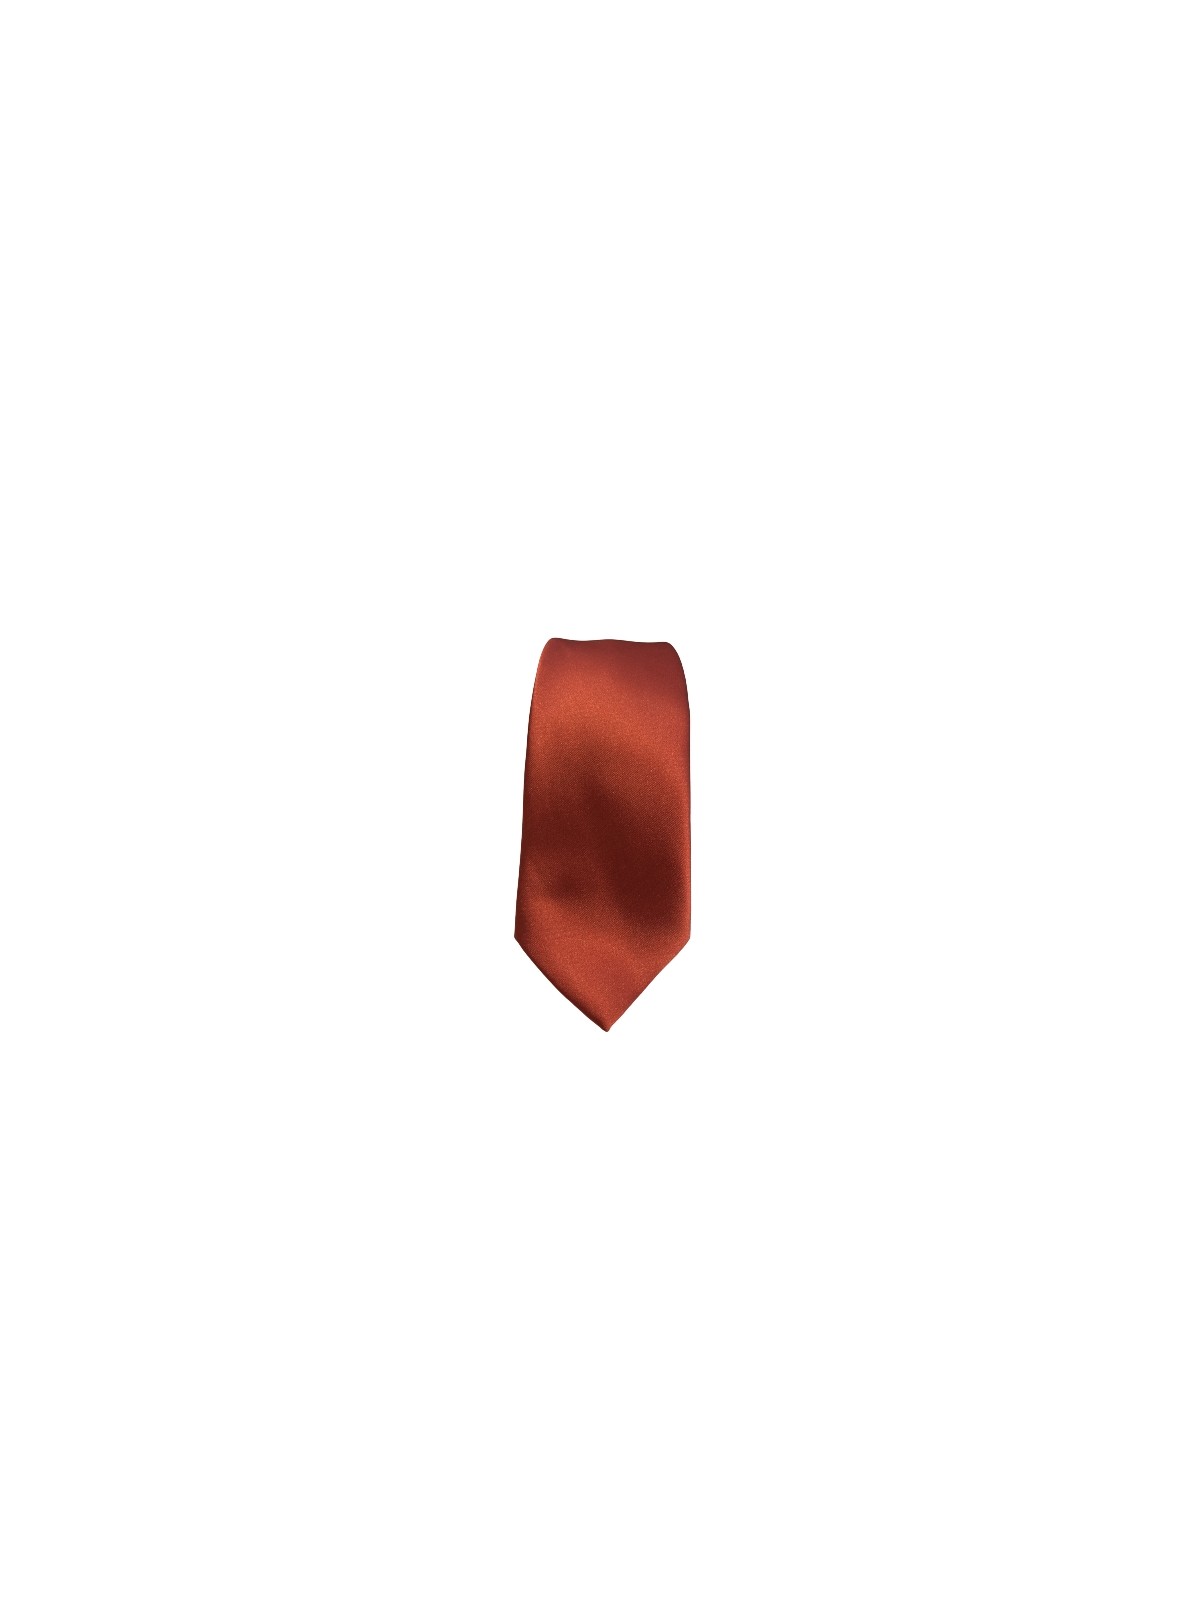 Cravate satinée cuivre